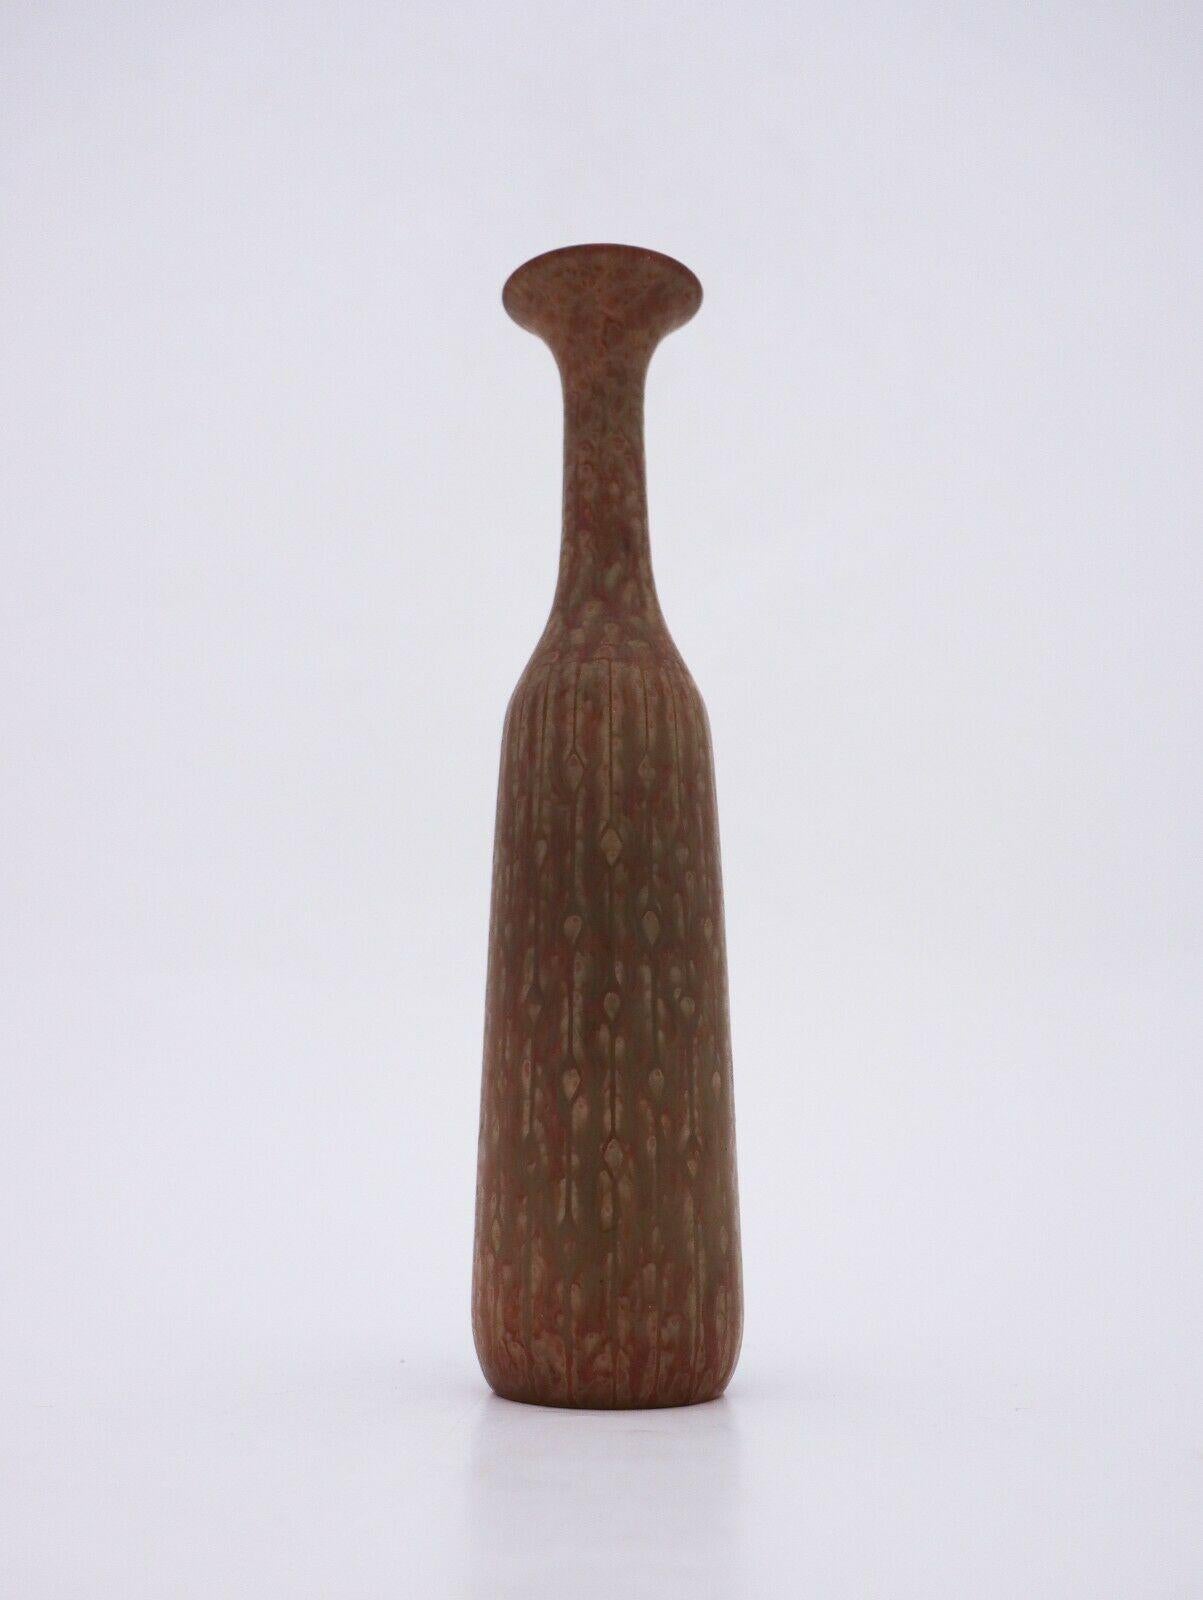 Un vase avec une belle glaçure mouchetée conçu par Gunnar Nylund à Rrstrand. Il mesure 25,5 cm de haut et est en très bon état, à l'exception de quelques petites marques dans la glaçure qui expliquent qu'il soit marqué comme de deuxième qualité.